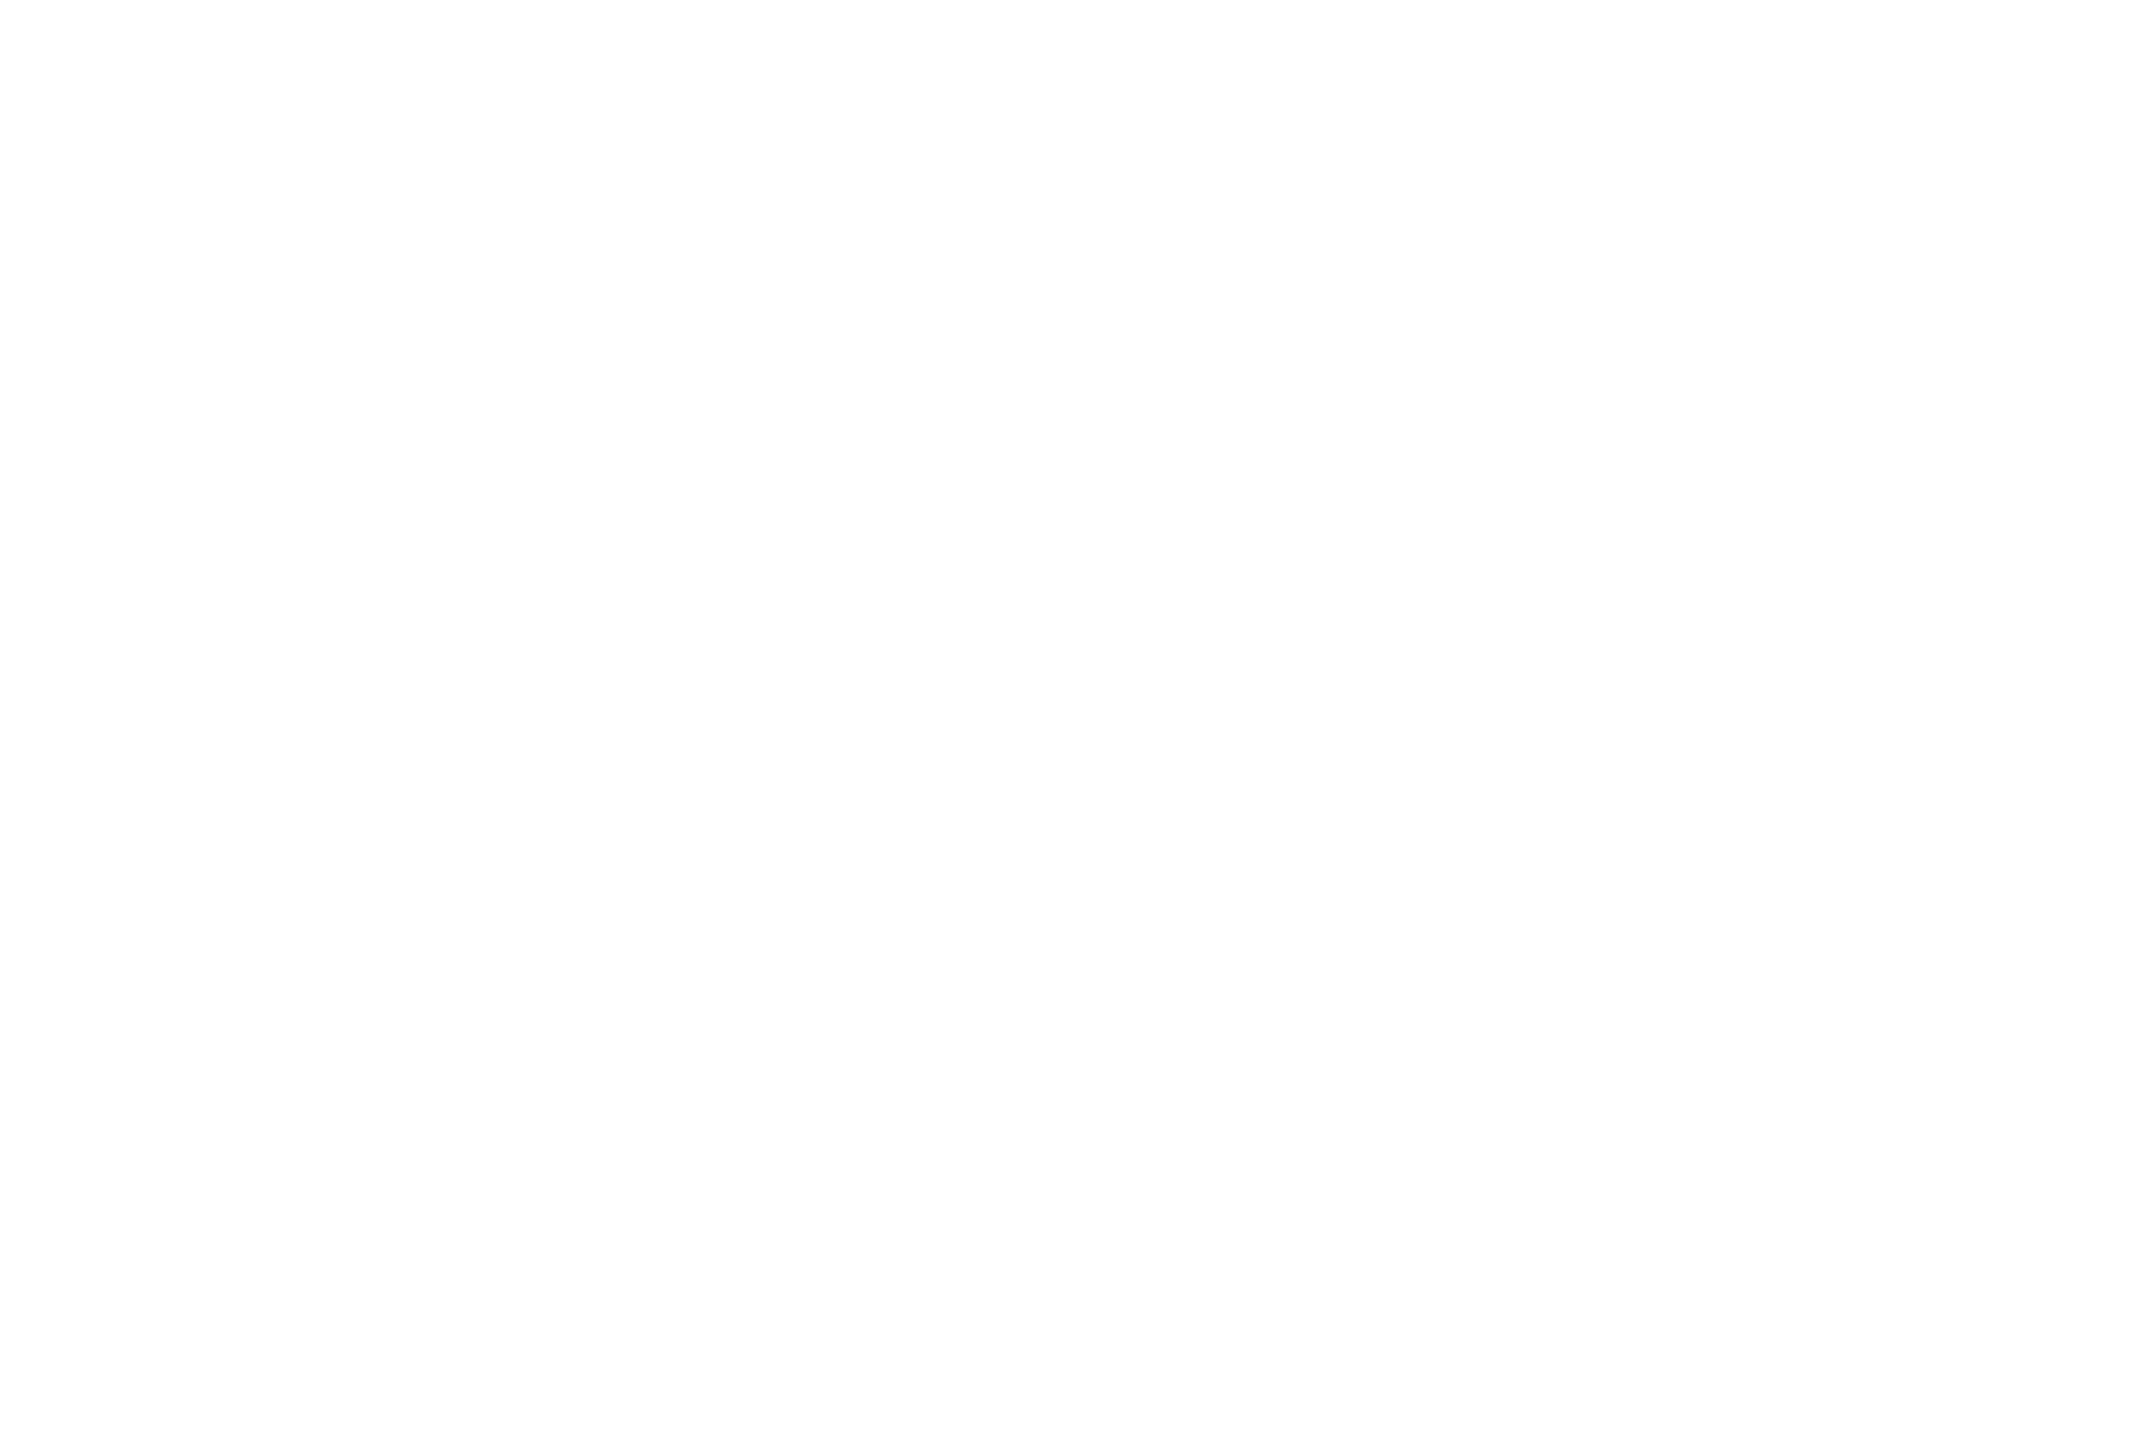 Talos Makine